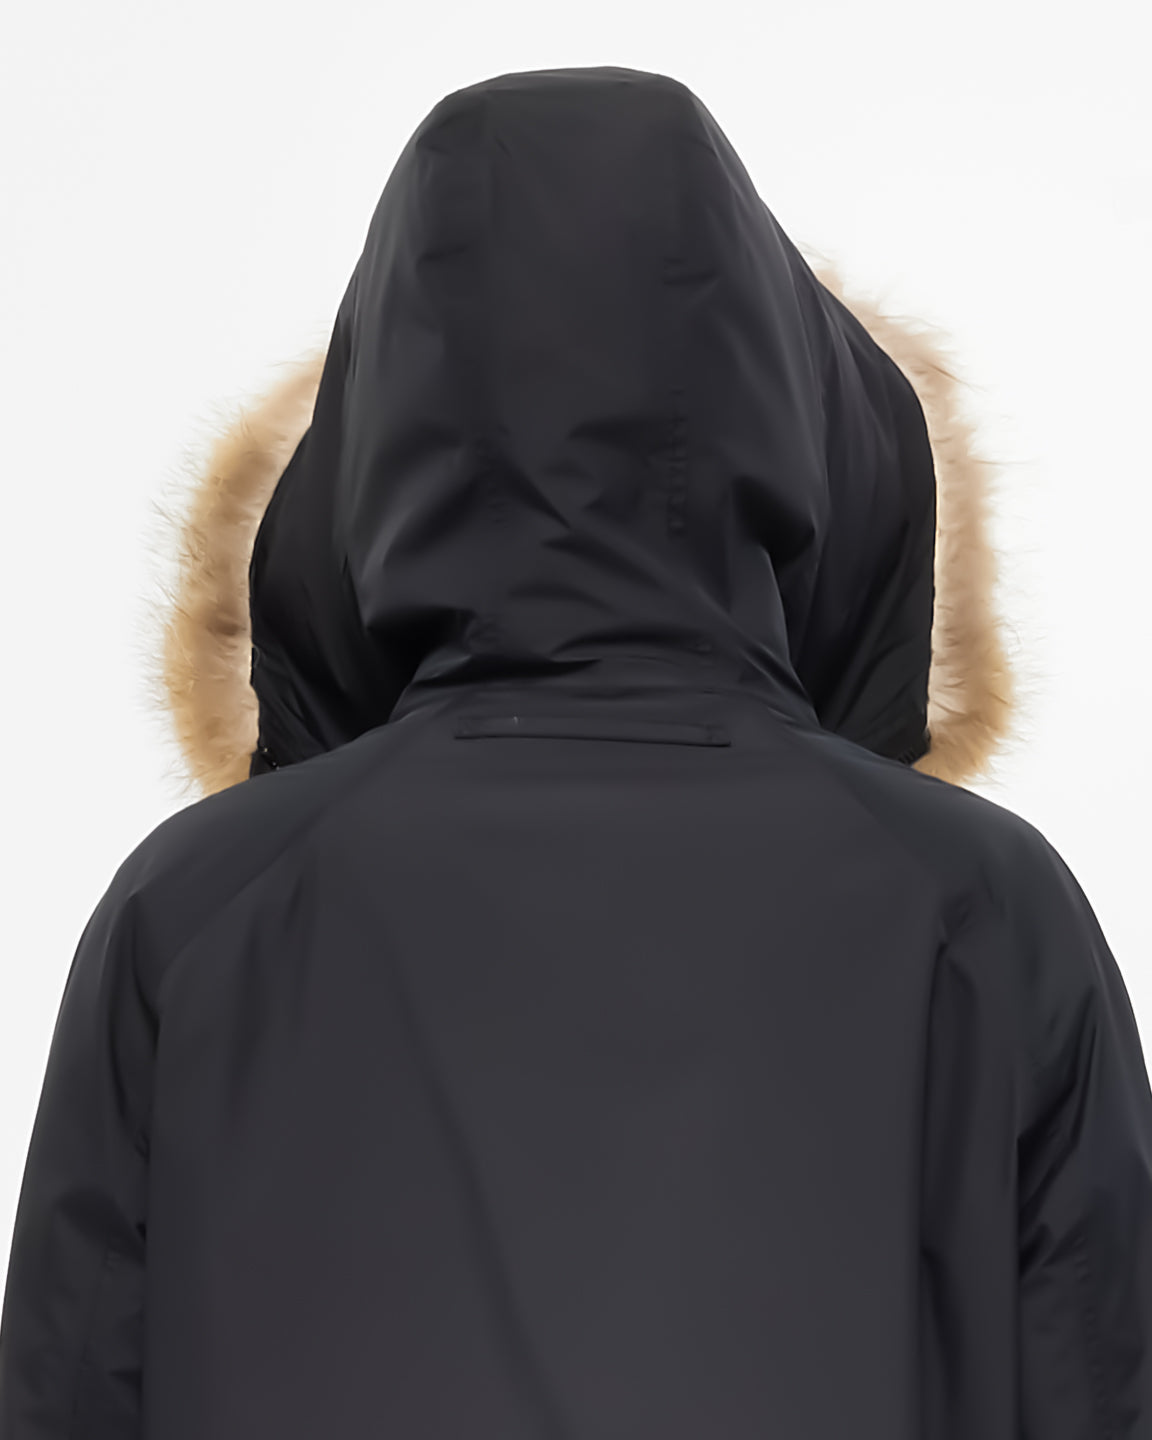 Prada Black Fur Hooded Down Winter Jacket - M